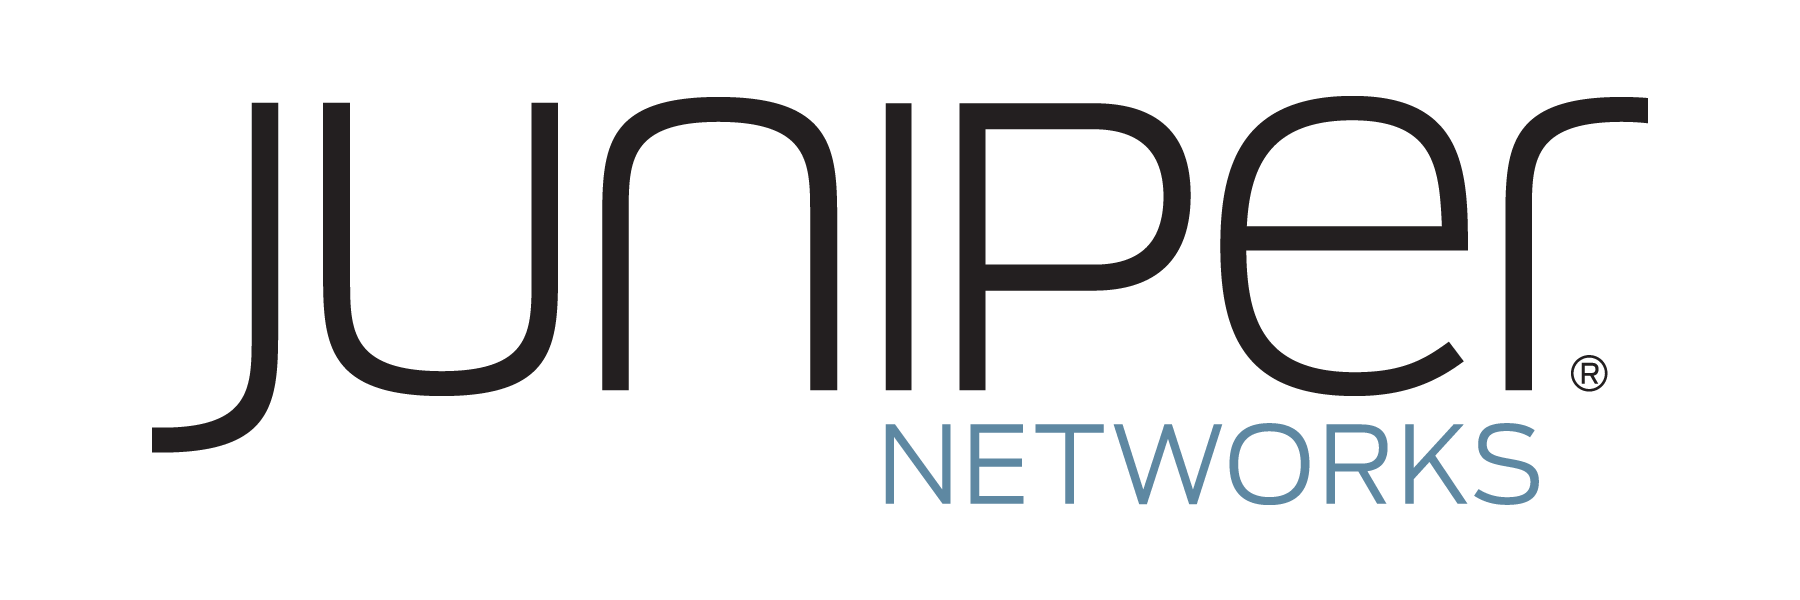 Networking - Partner Logo 3